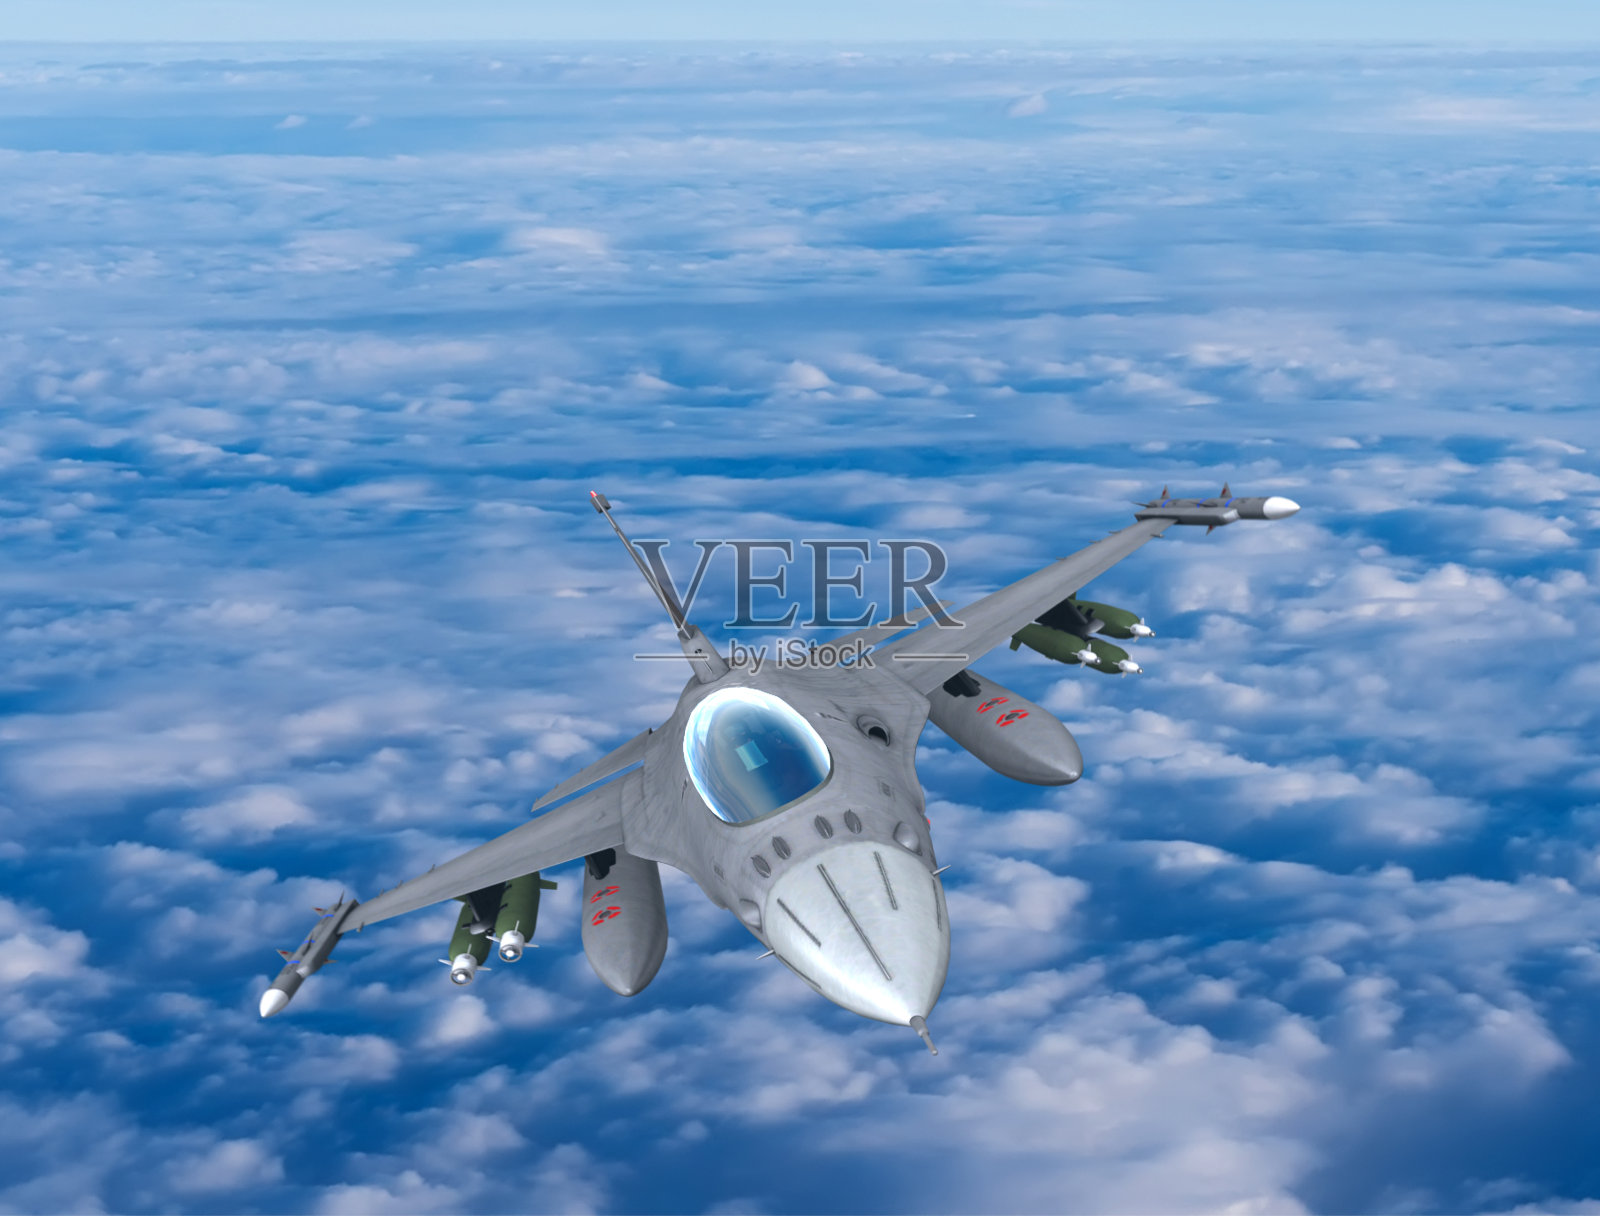 Fıghter Jet in flight照片摄影图片